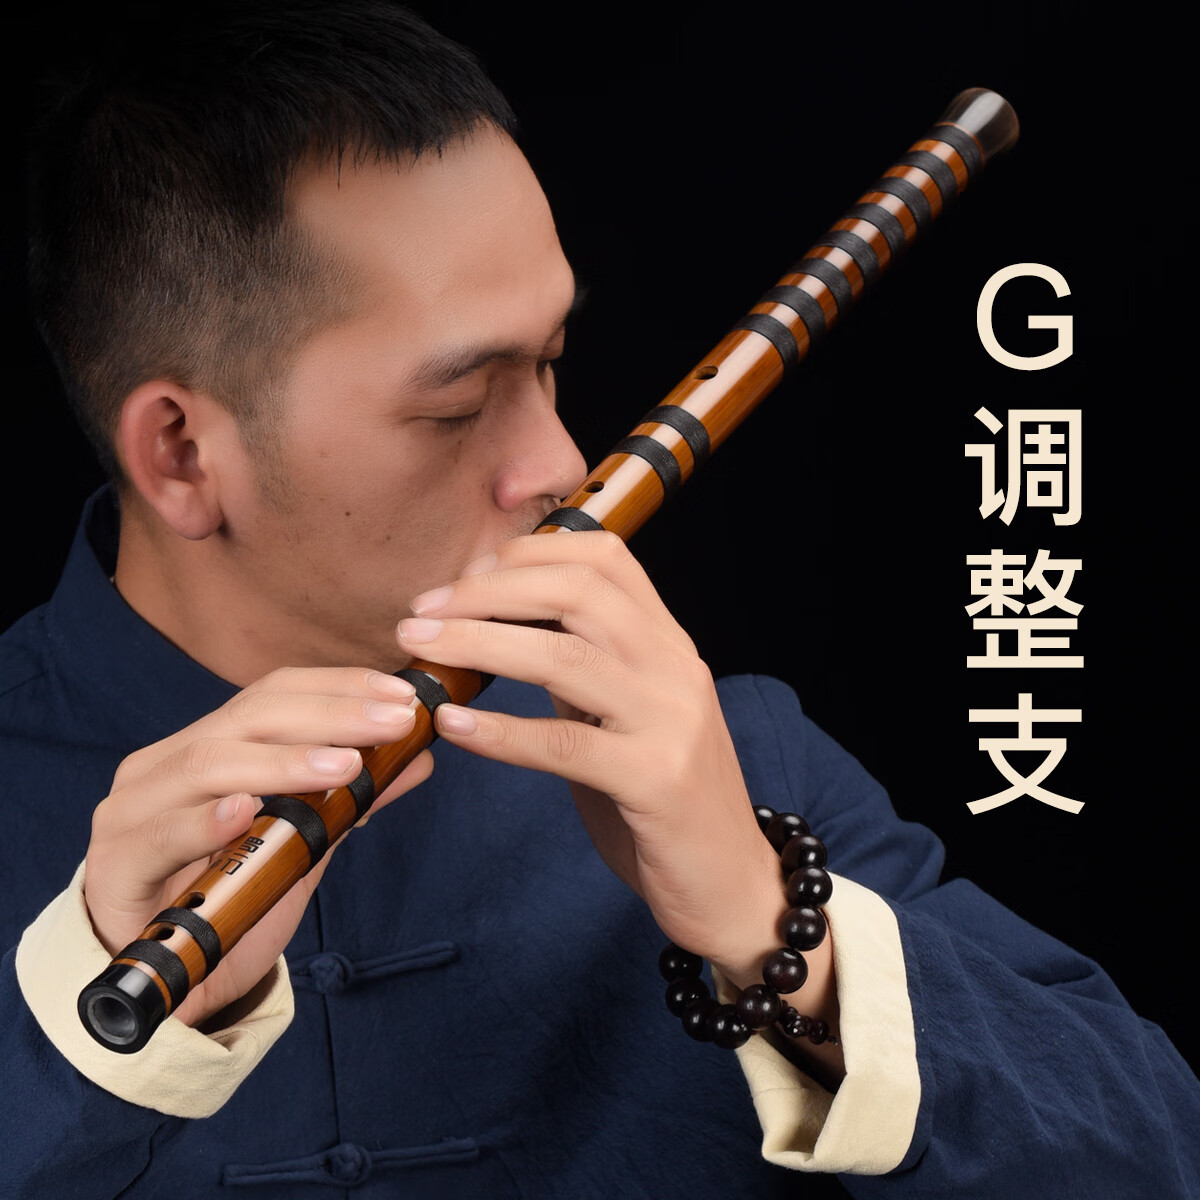 罗一刀一启款初学入门笛子竹笛专业演奏成人高级笛子初学者苦竹乐器 G调 整支